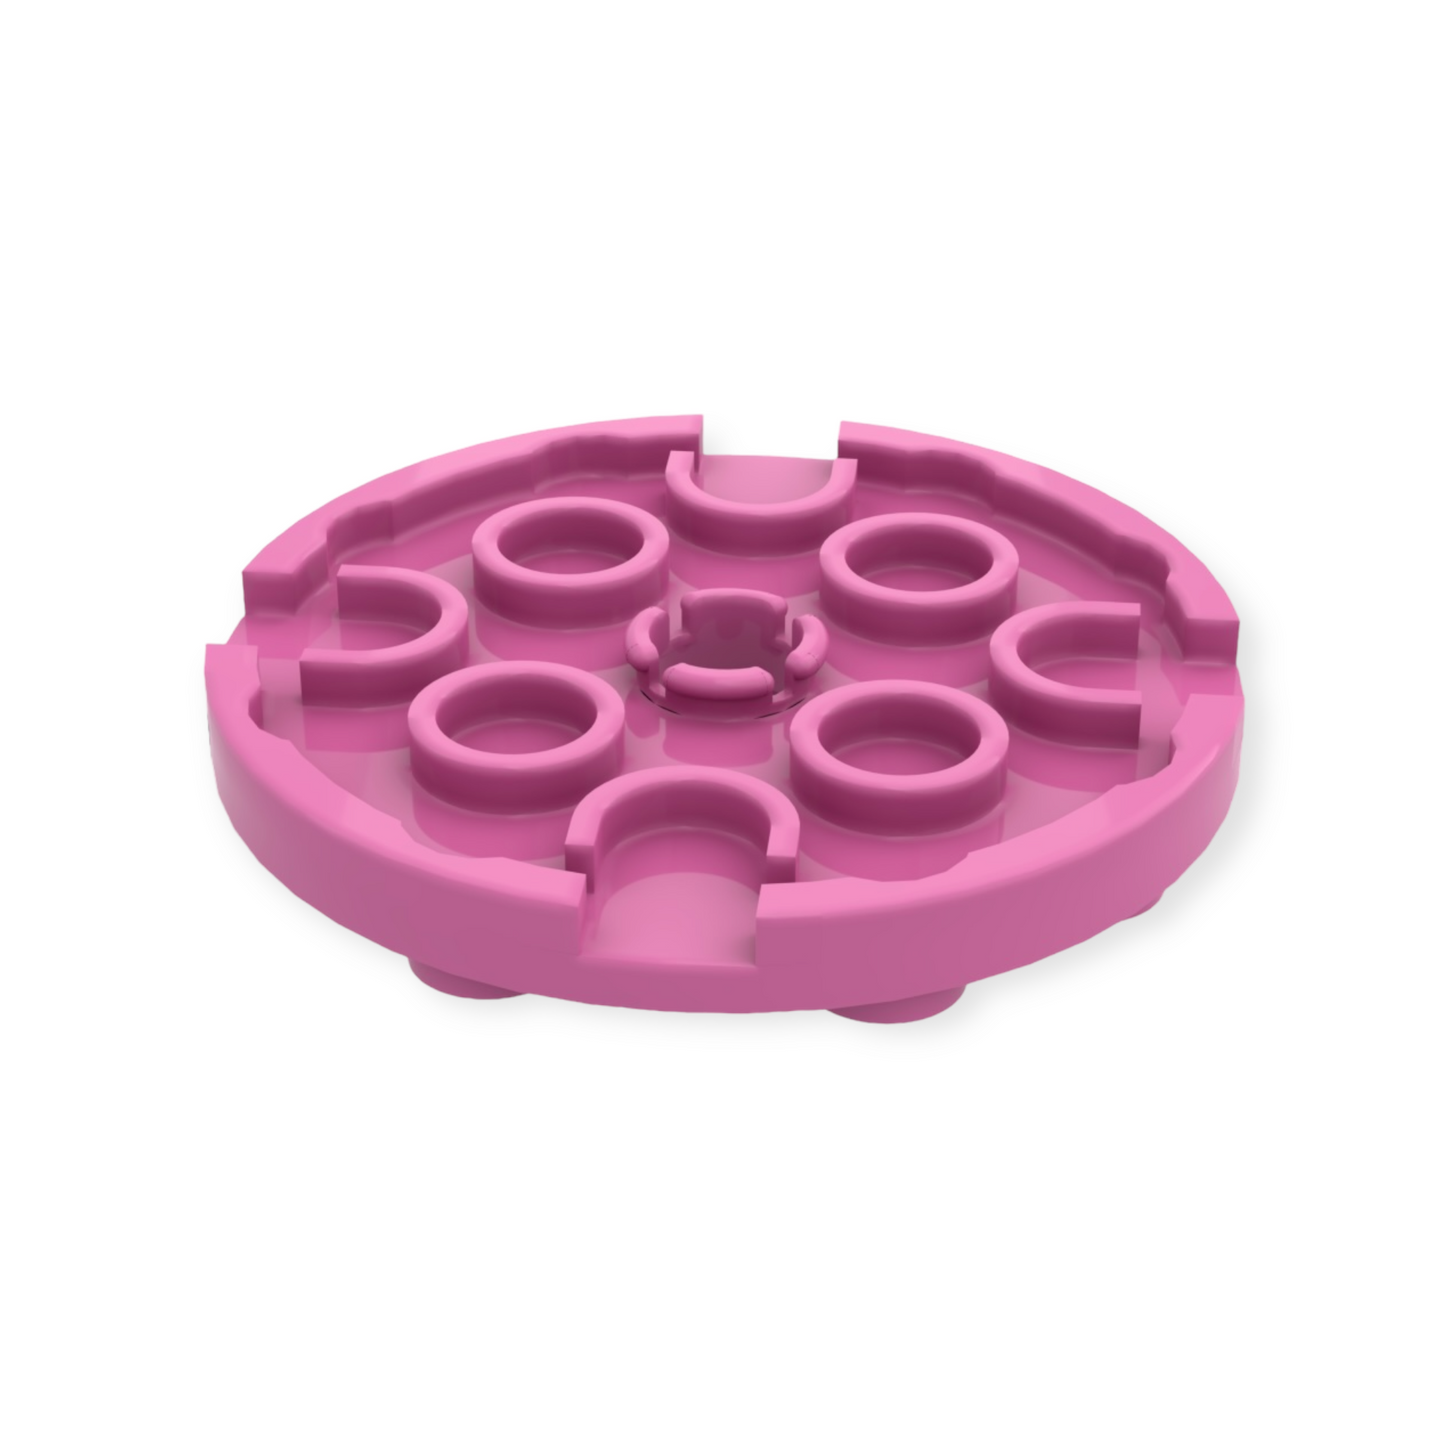 LEGO Plate Round 4x4 - Dark Pink